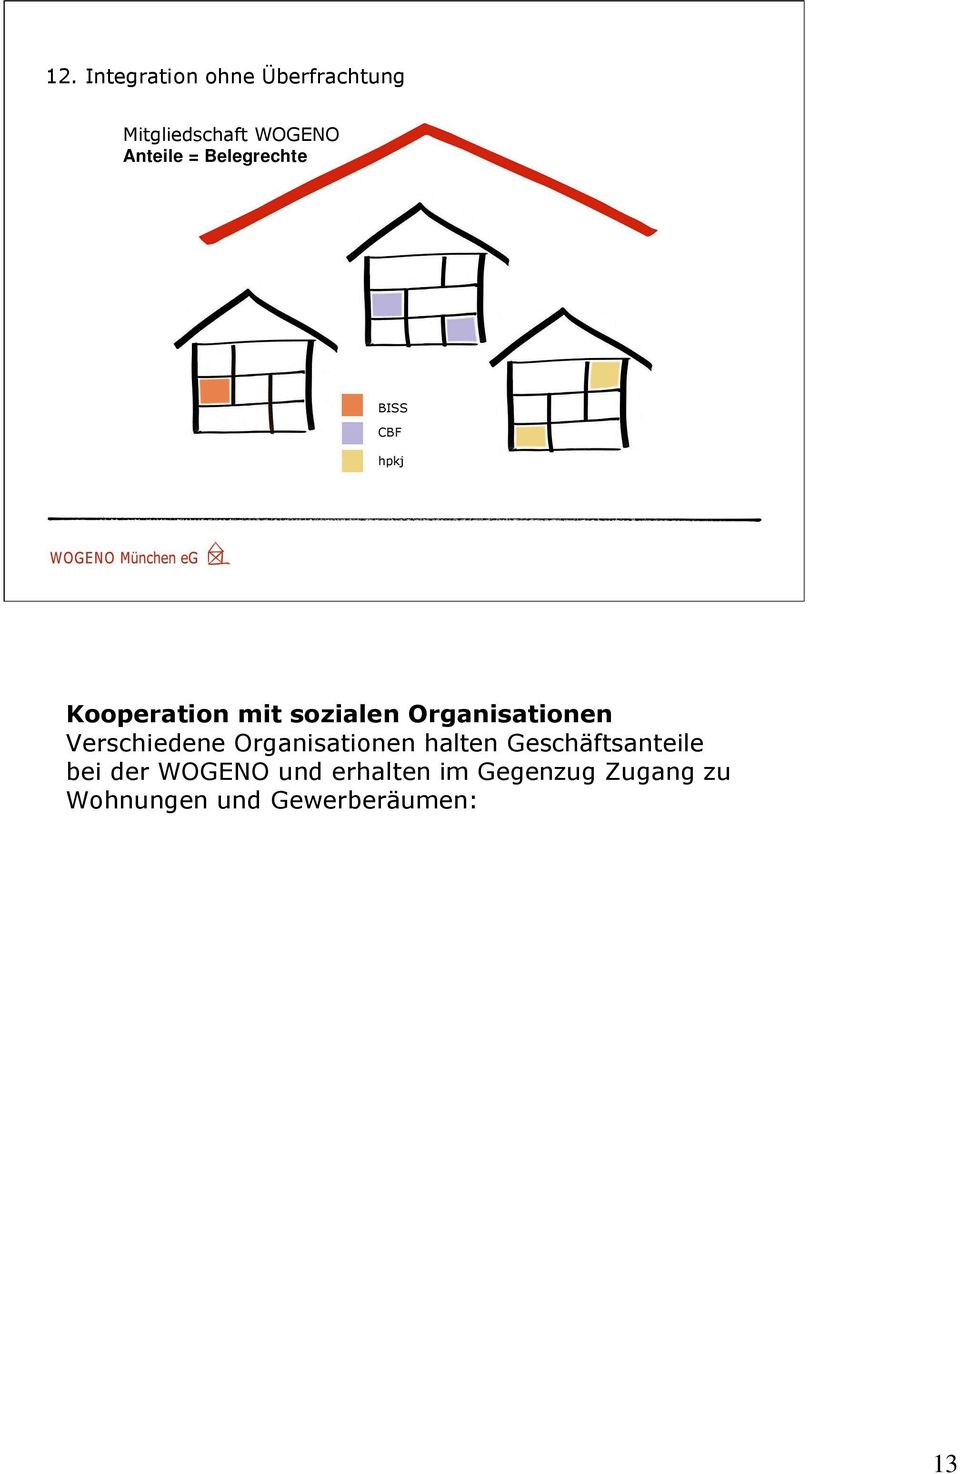 BISS e.v.: Vermietung an Wohnungslose. GBF e.v.: Vereinsräume in der Johann-Fichte-Straße, wo auch 6 der 30 Wohnungen rollstuhlgerecht gebaut wurden.